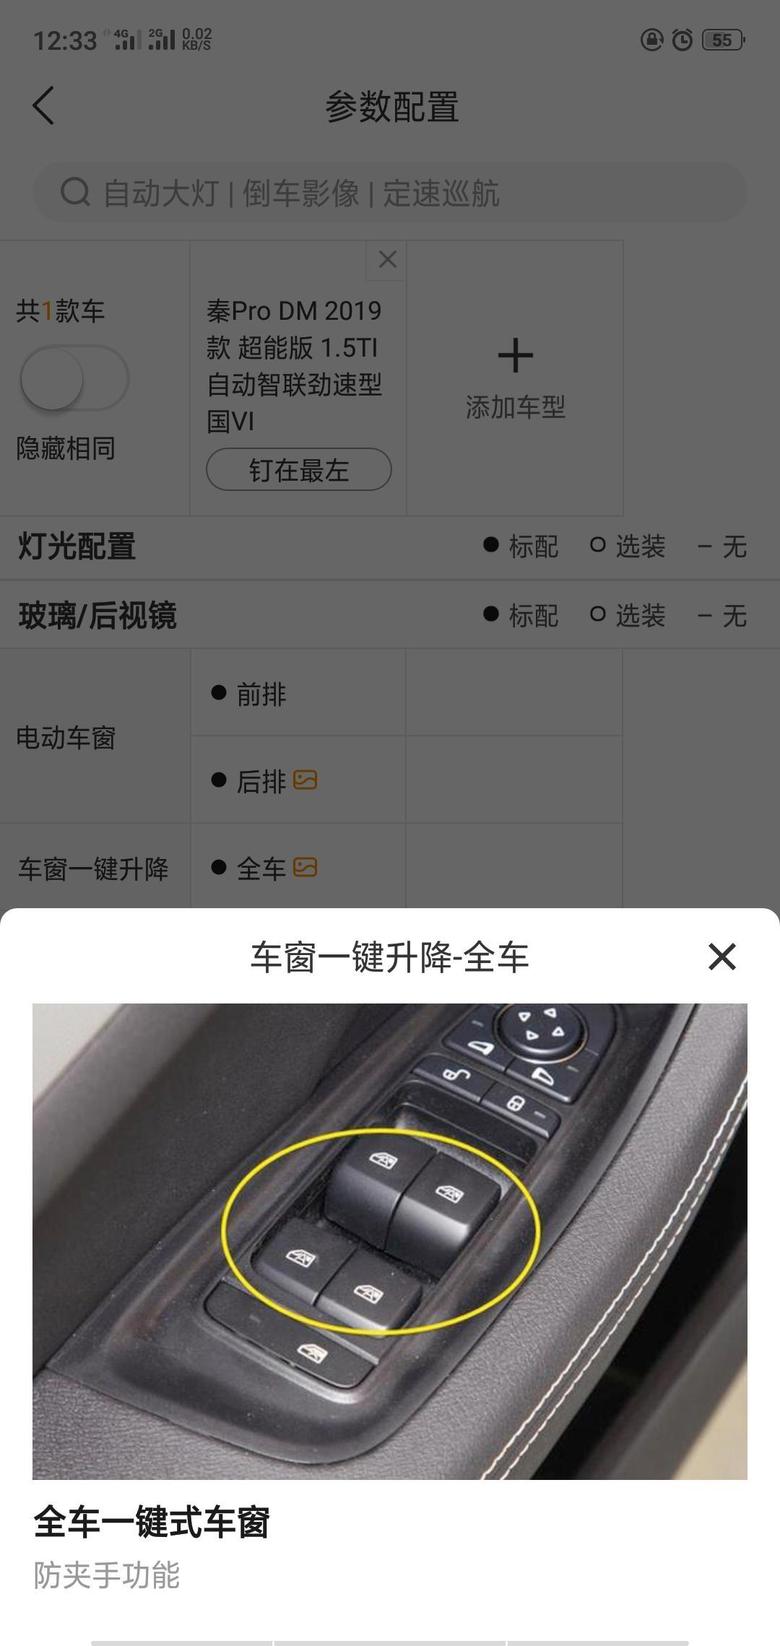 秦pro dm 车窗一键升降是按哪个键，是那四个按钮下面那个大的吗